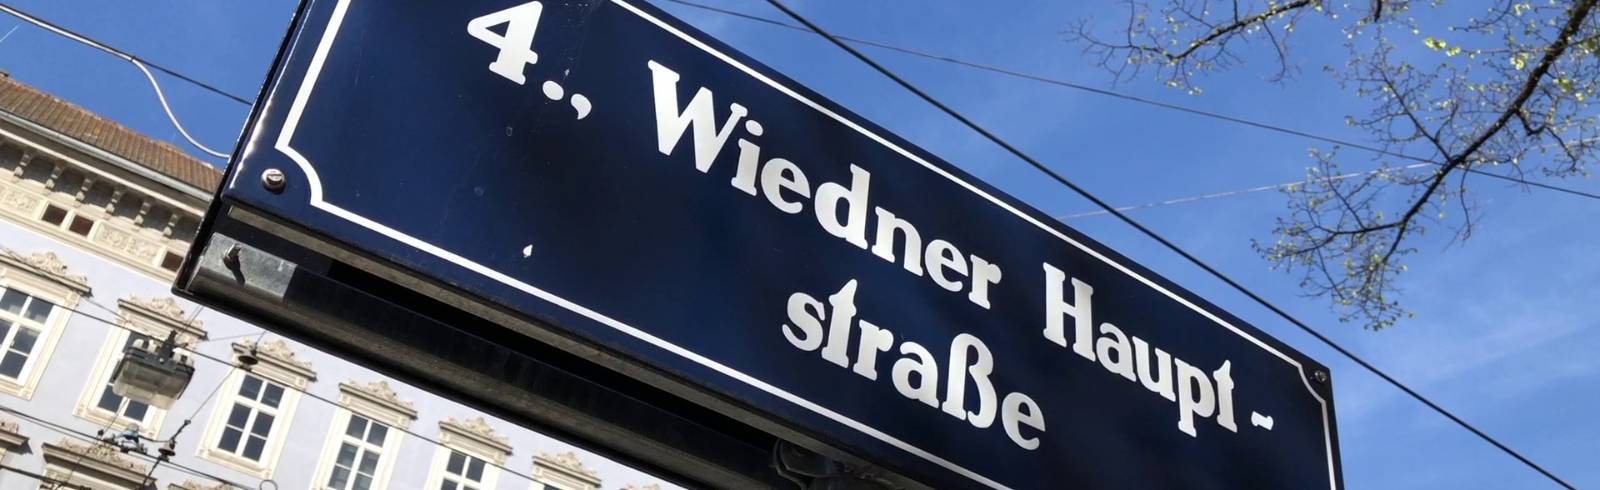 Wiedner Hauptstraße: Umbauarbeiten gestartet